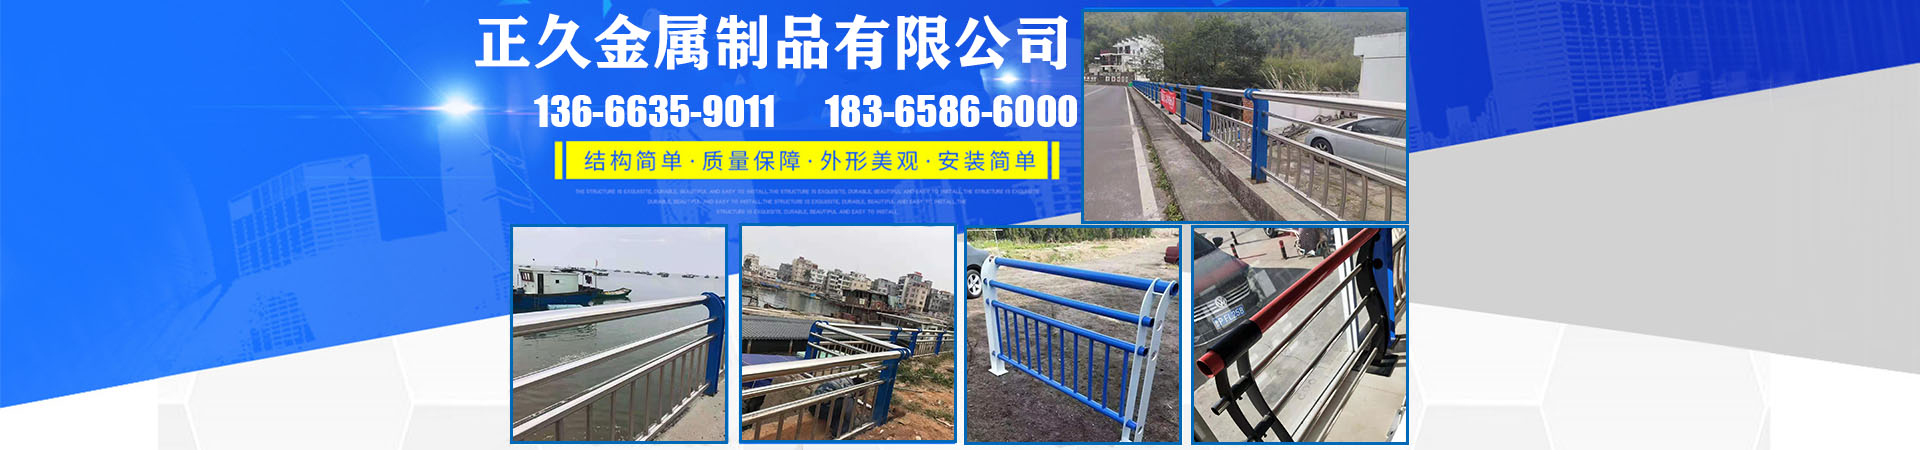 市政护栏、贵州本地市政护栏、贵州、贵州市政护栏